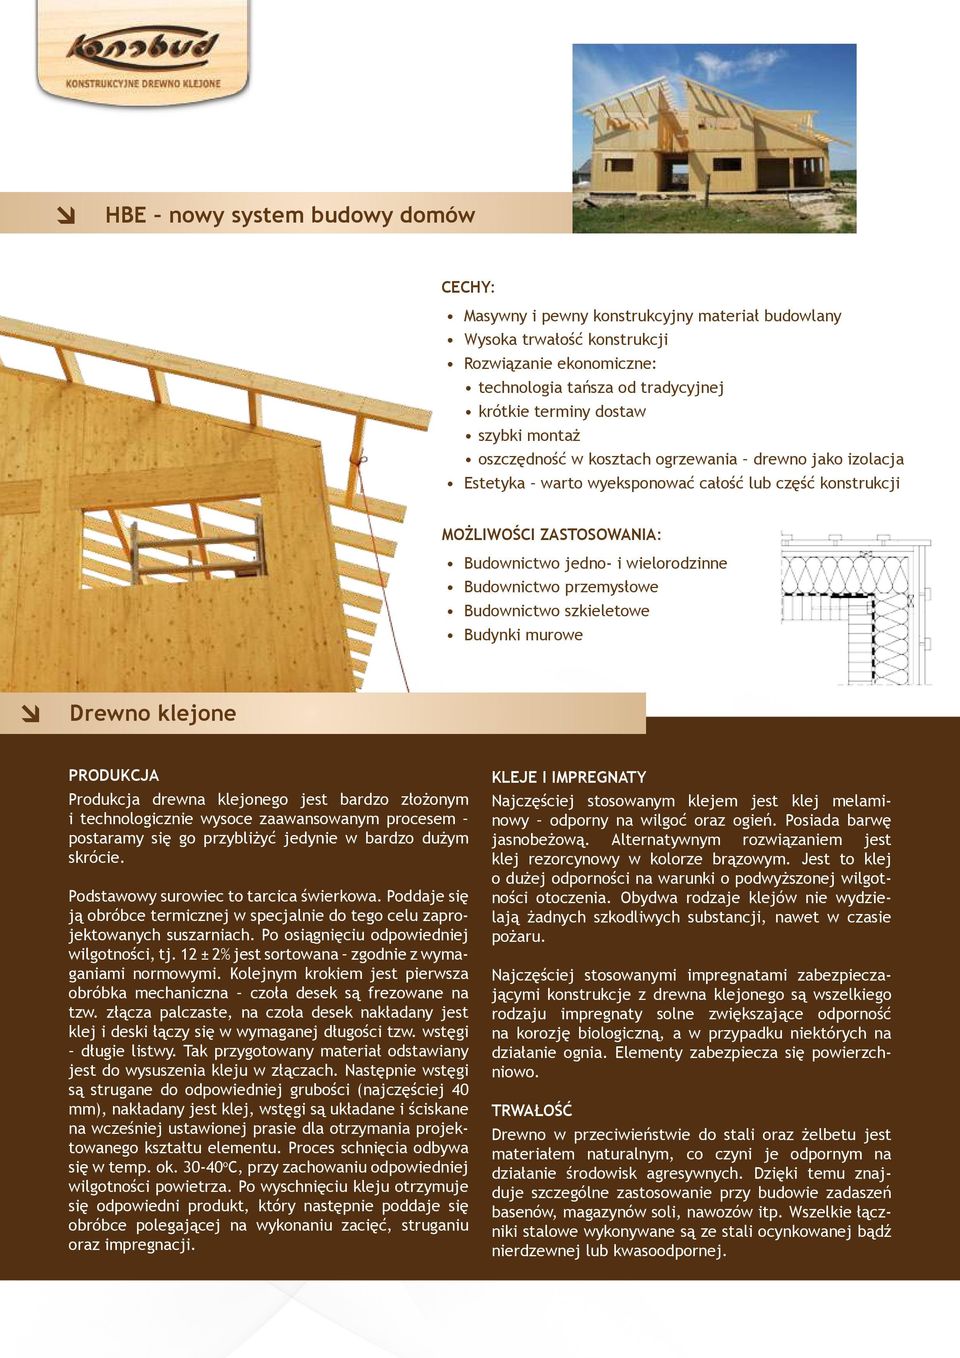 przemysłowe Budownictwo szkieletowe Budynki murowe Drewno klejone PRODUKCJA Produkcja drewna klejonego jest bardzo złożonym i technologicznie wysoce zaawansowanym procesem postaramy się go przybliżyć